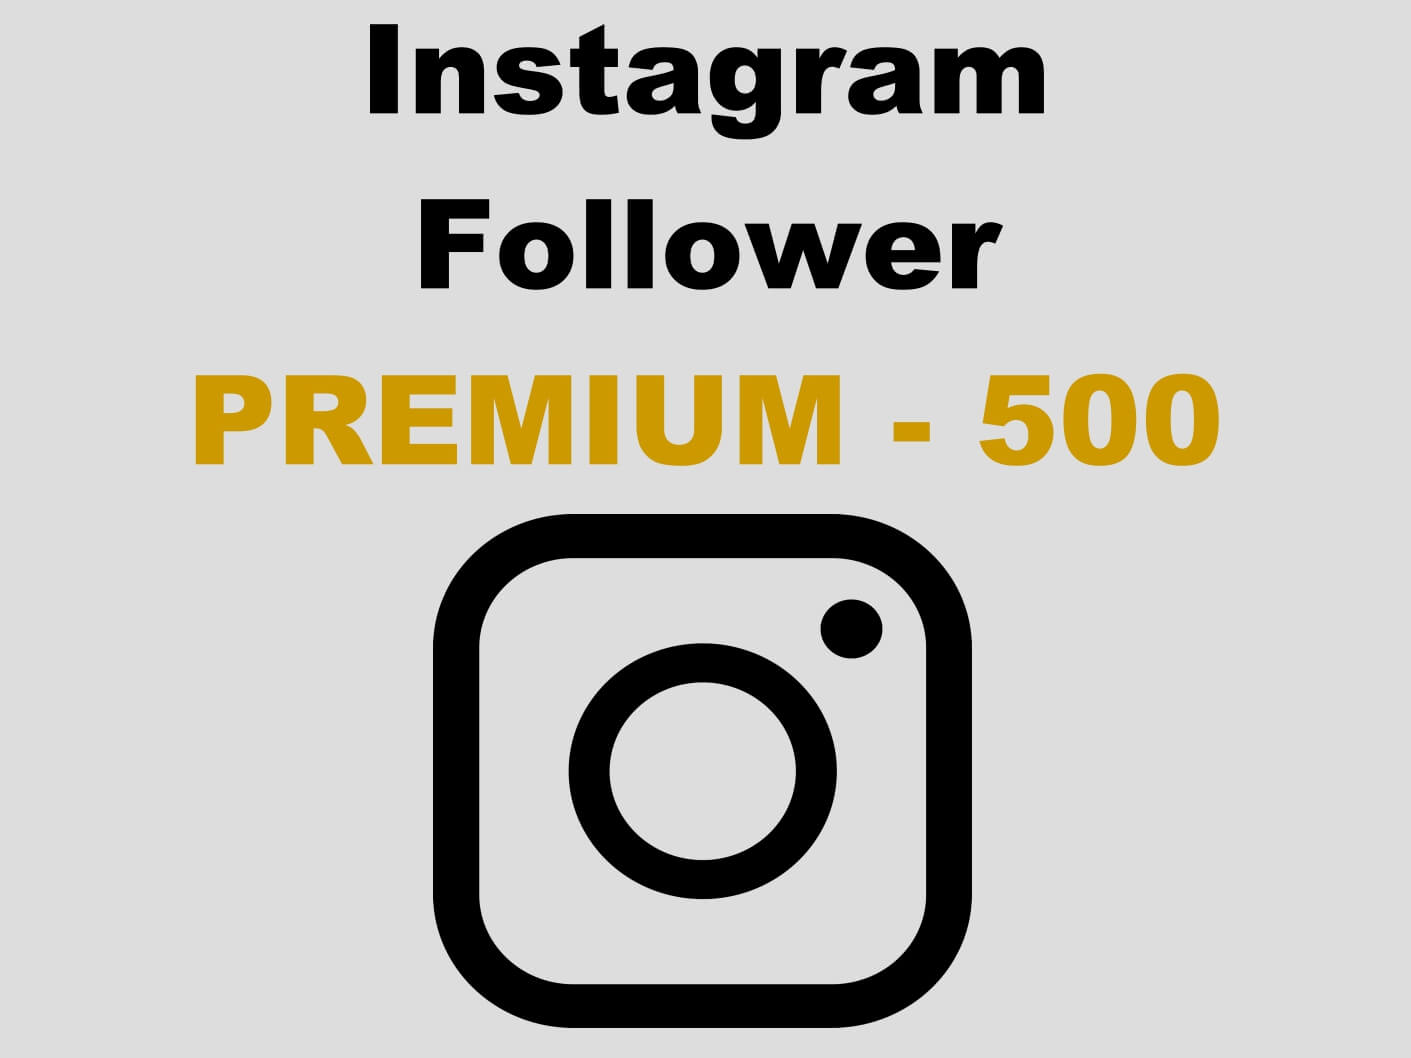 Premium Instagram Follower kaufen 500 - Per PayPal und AmEx